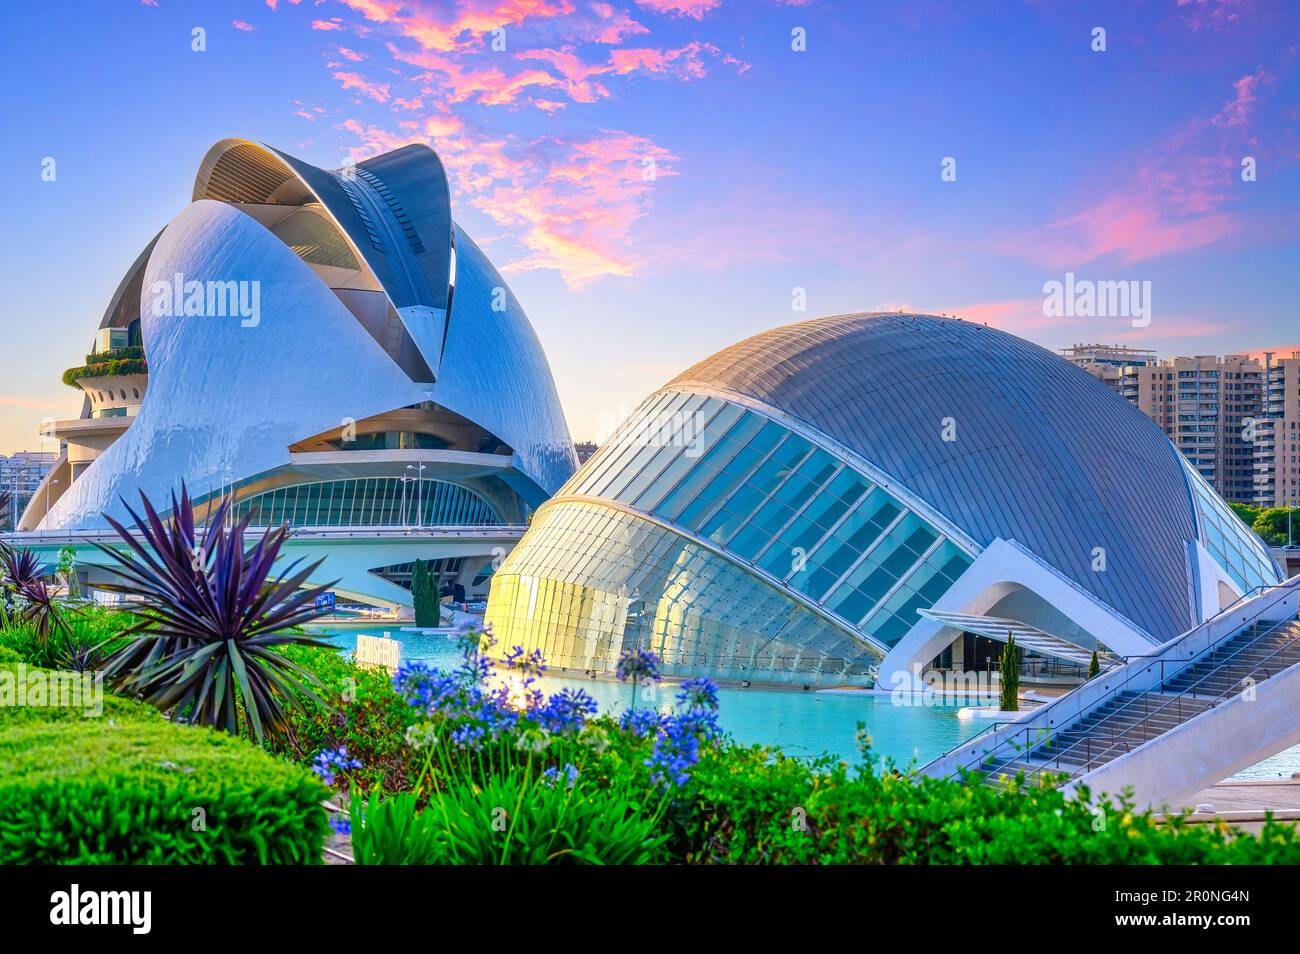 Valencia, Spagna - 17 luglio 2022: L'Hemisferic e il Palau de les Arts edifici. La Ciudad de las Artes y las Ciencias è un landma internazionale Foto Stock